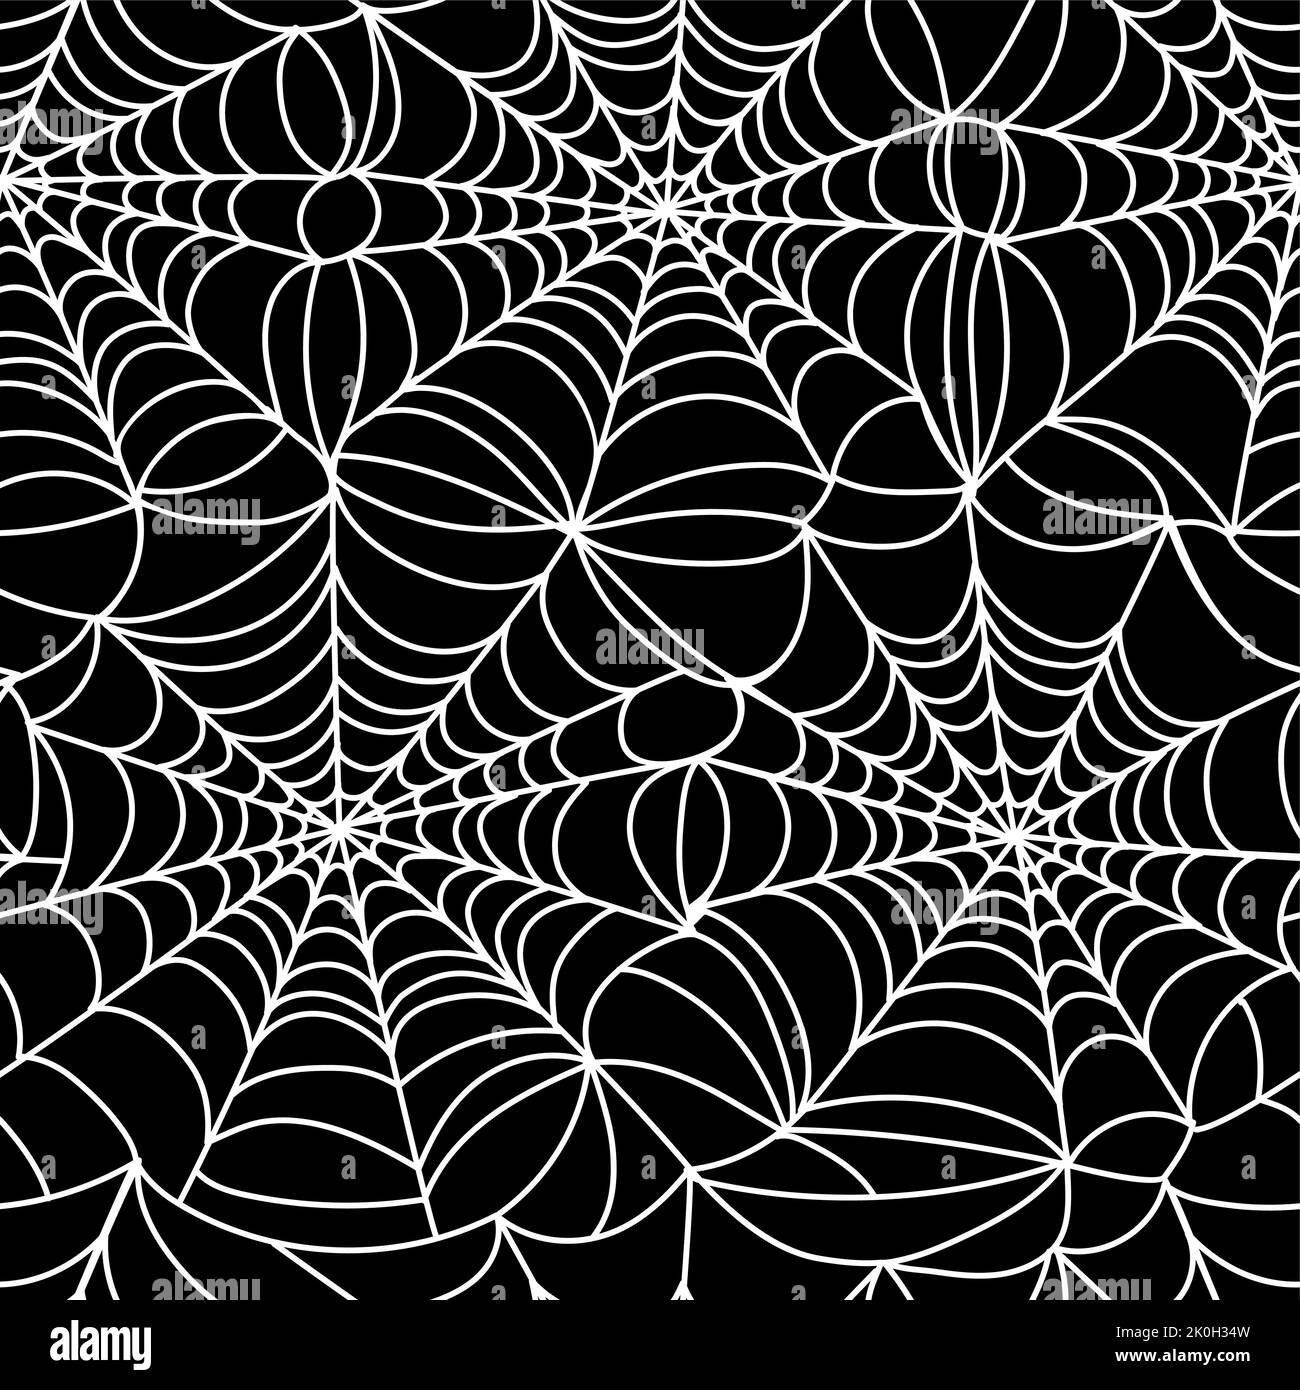 Spinnennetz-Muster. Halloween nahtloser Druck von Spinnennetz, monochrome Gothic Horror Netzfalle zum Einwickeln Papier Design. Vektorstruktur Stock Vektor